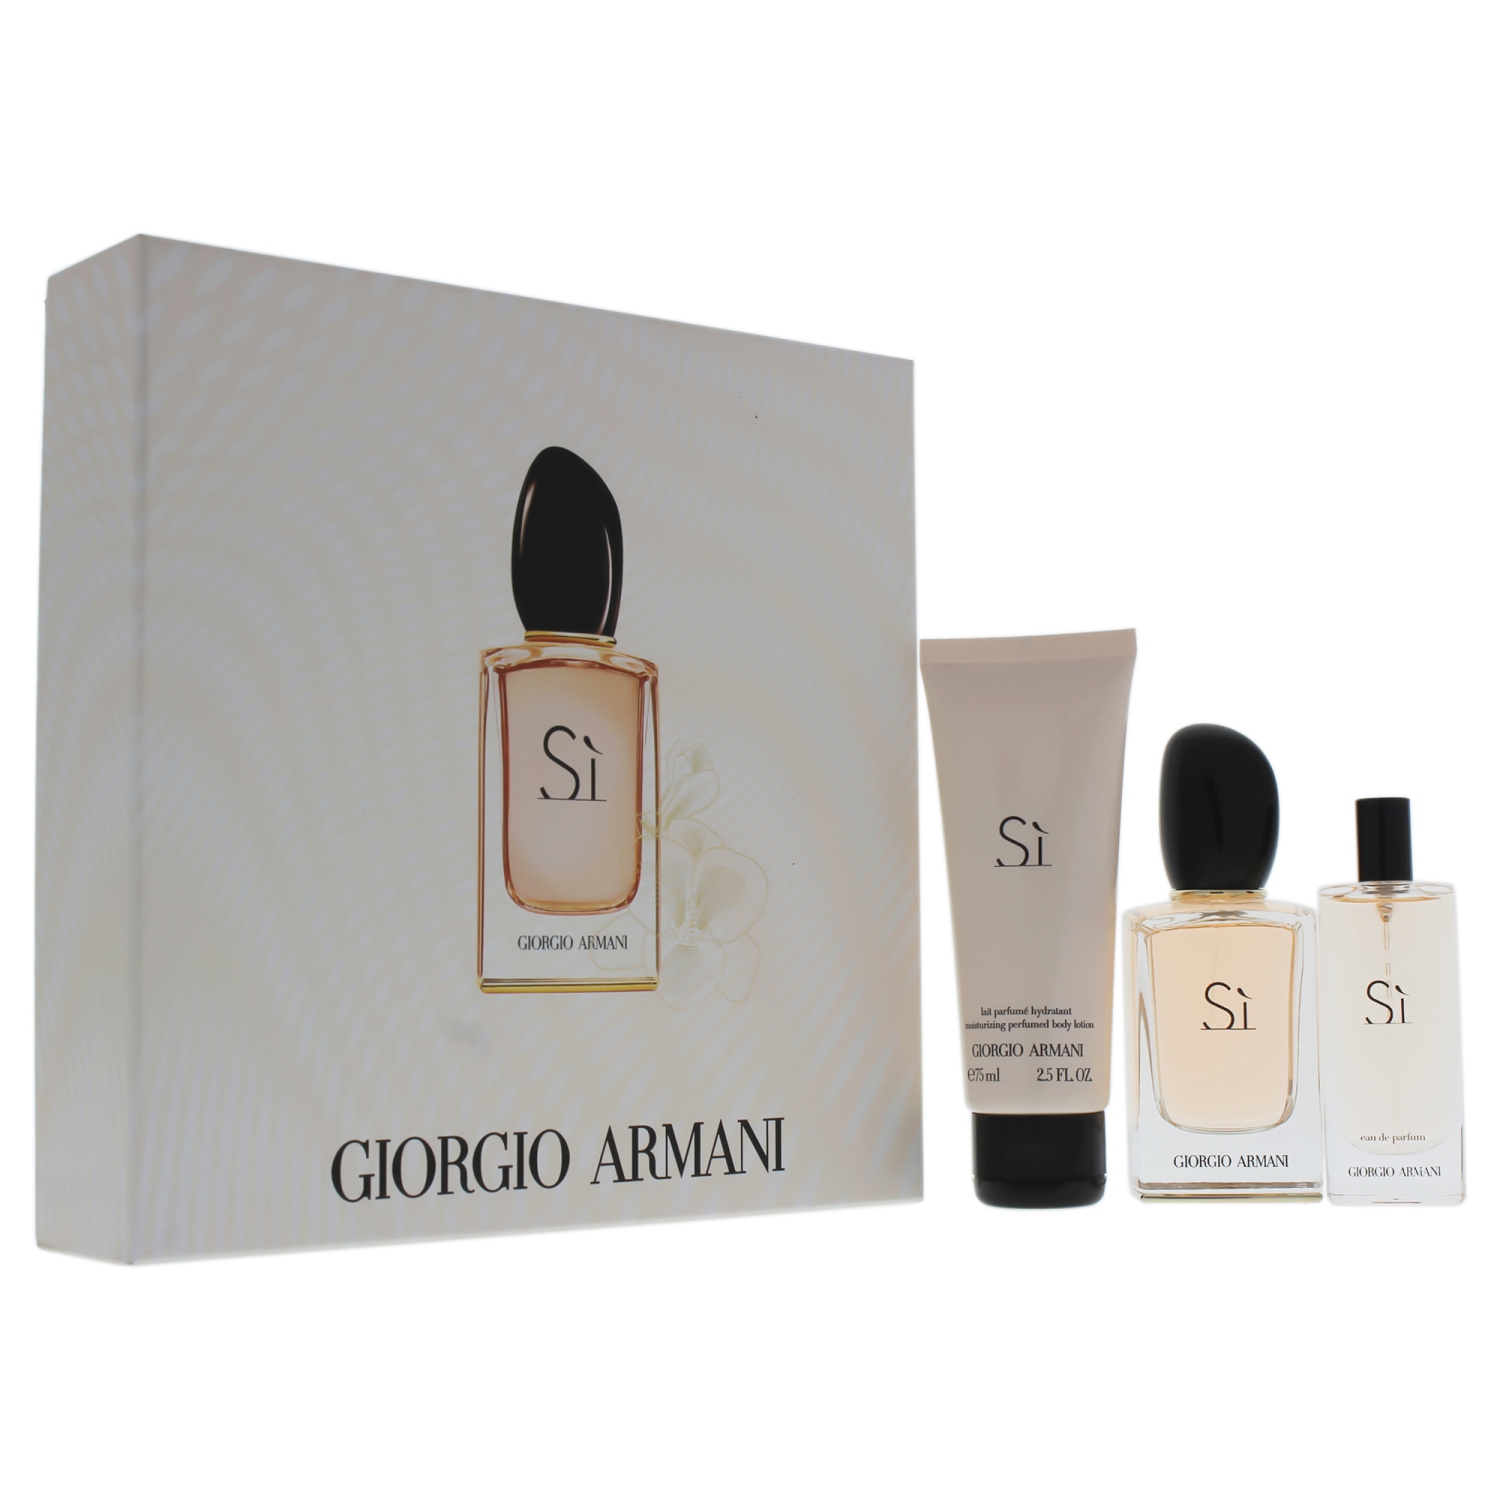 Giorgio Armani Si by Giorgio Armani for Women - 3 Pc Gift Set